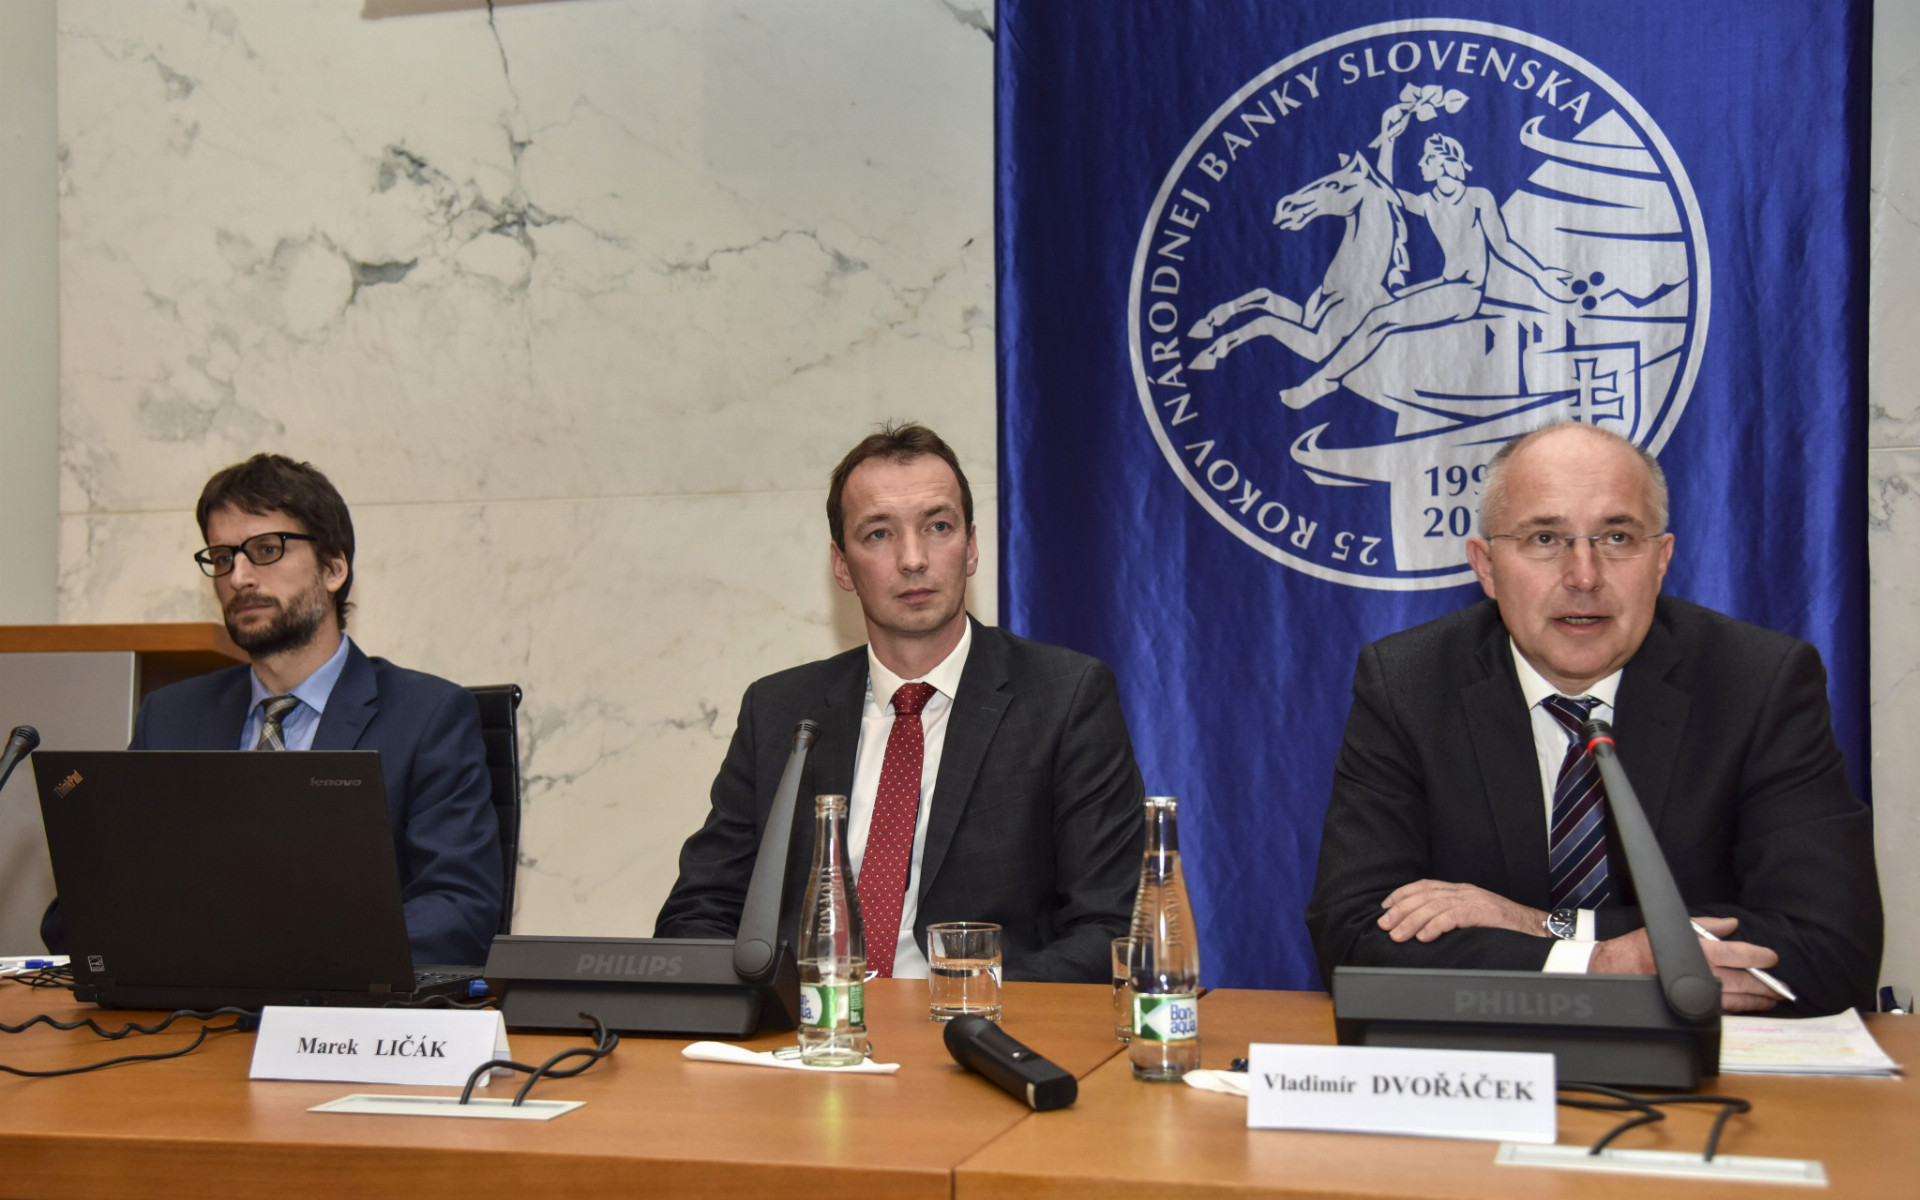 Rast úverov domácnostiam patrí medzi top riziká z hľadiska finančnej stability na Slovensku, potvrdil Vladimír Dvořáček (na snímke vpravo).